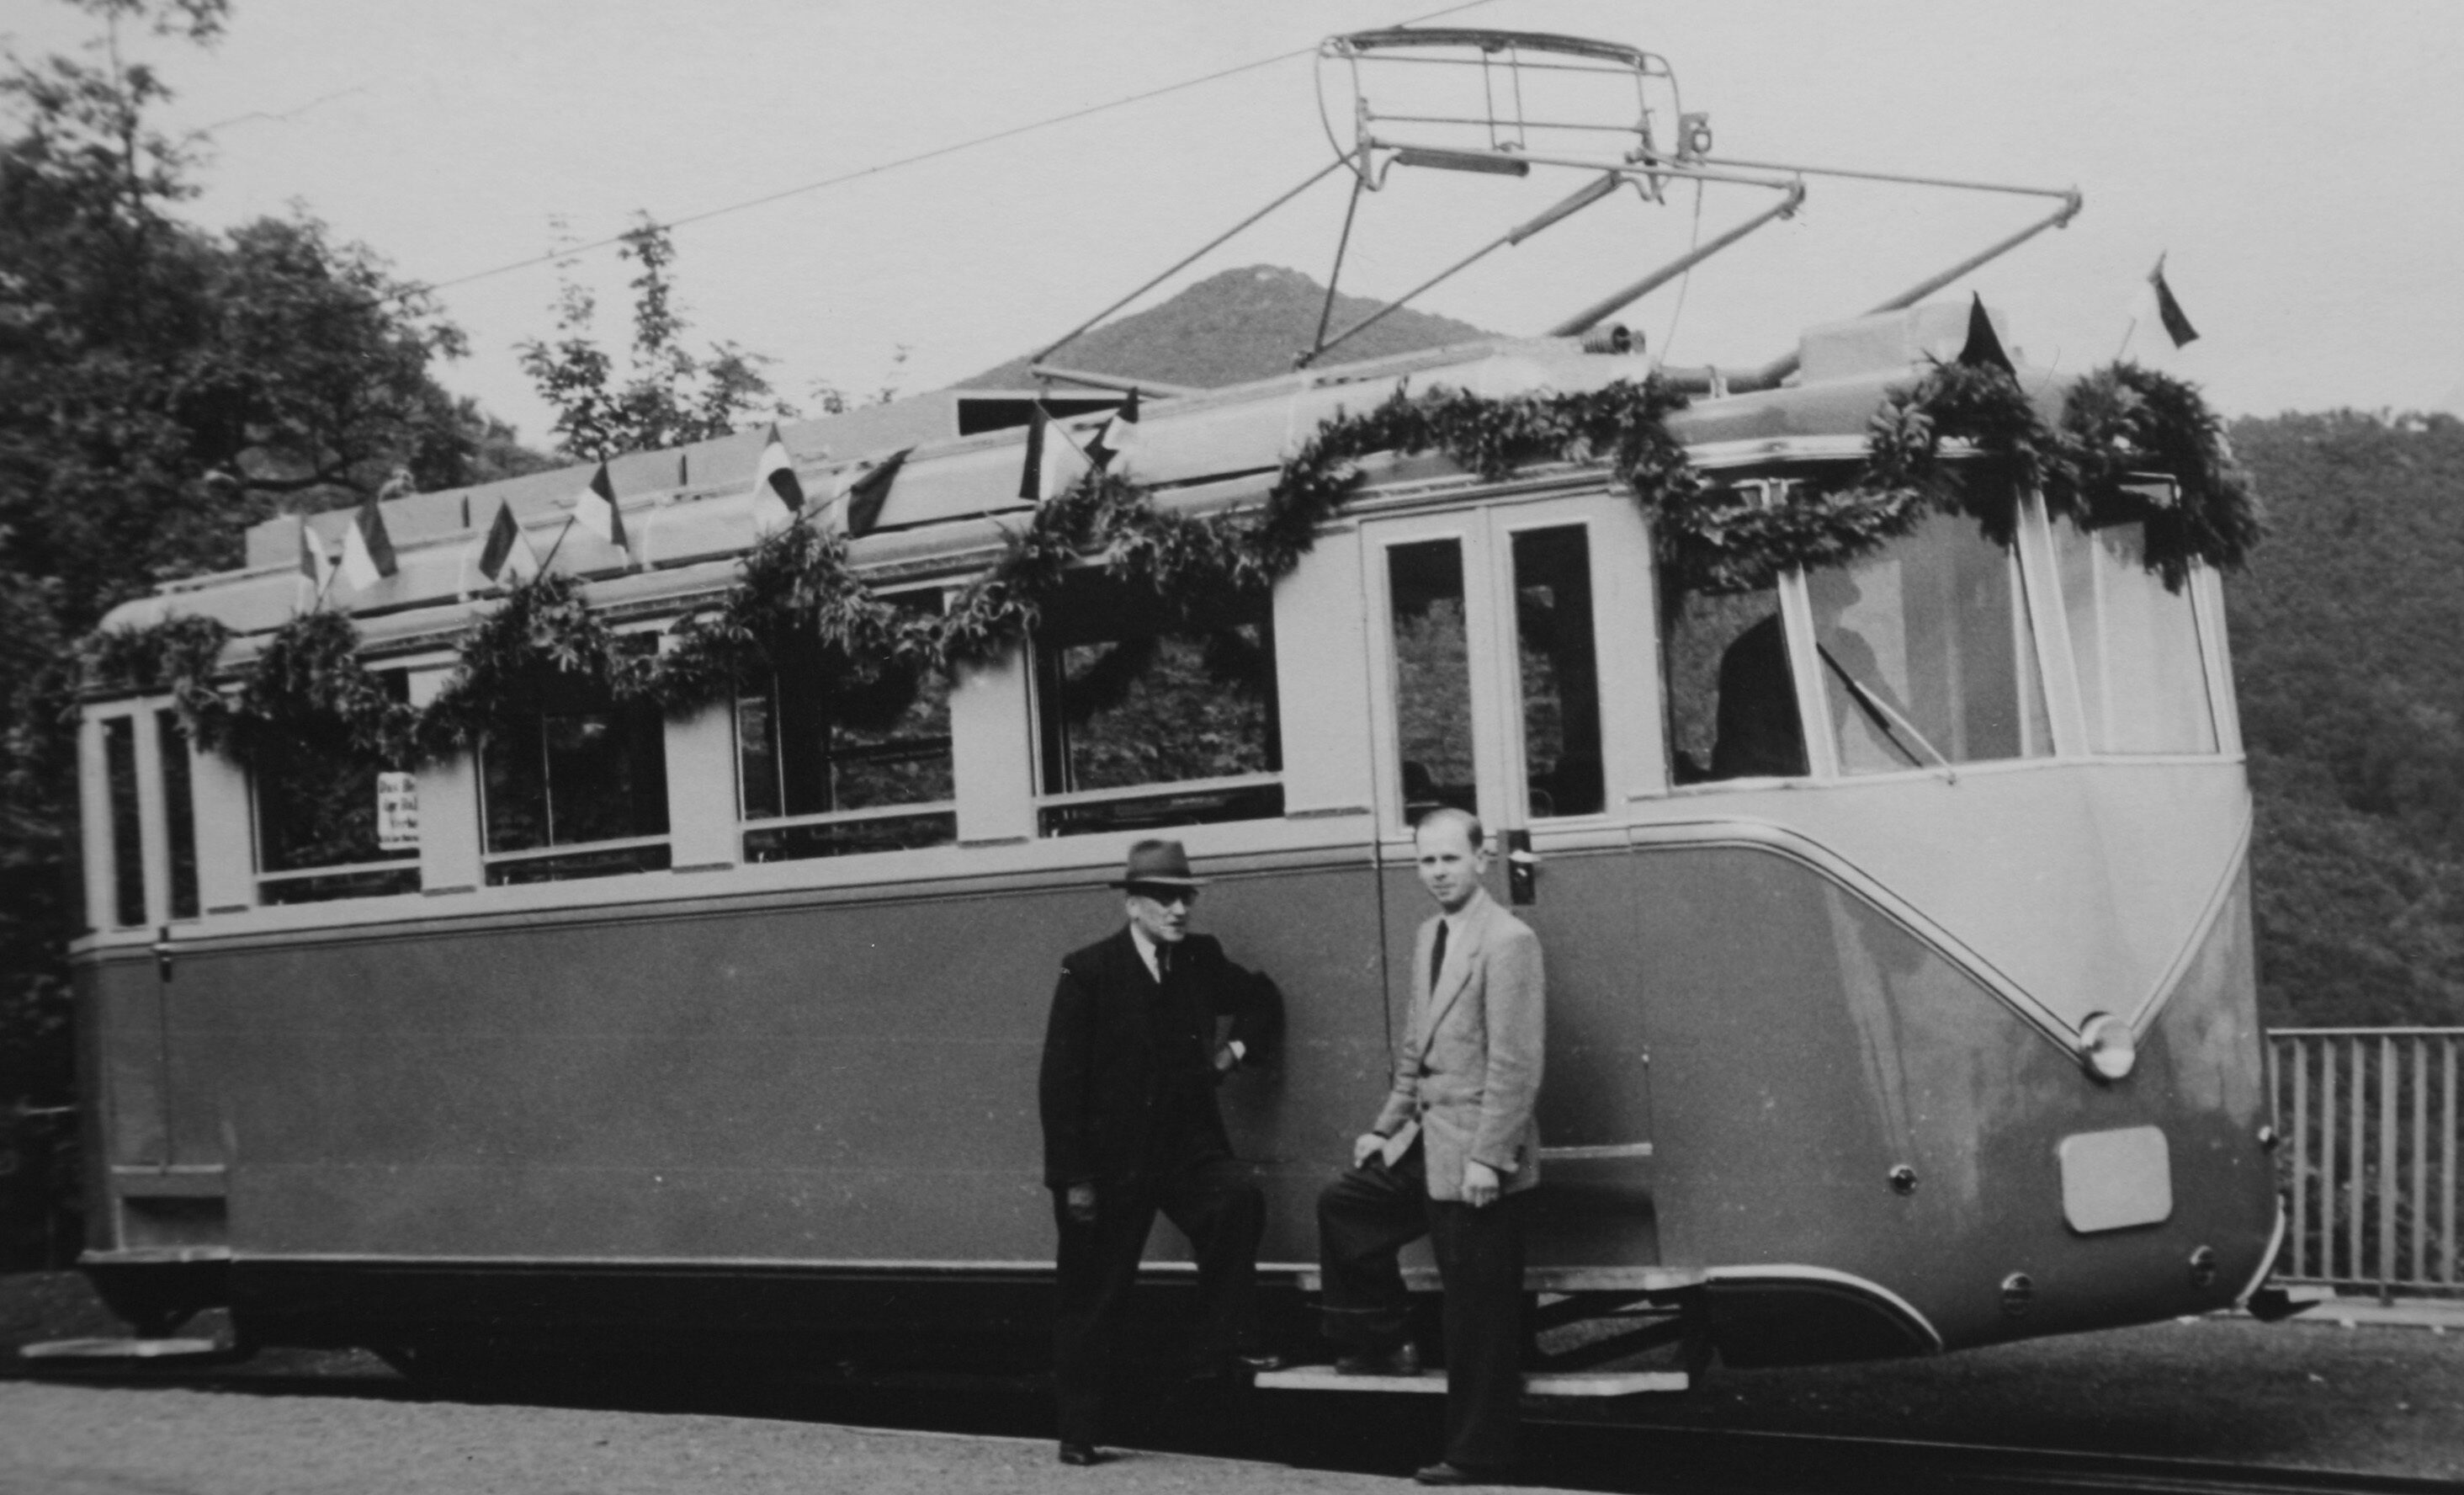 ERSTER ELEKTRISCHER TRIEBWAGEN
1953
Nachdem es Anfang des 20. Jahrhunderts Überlegungen zur Elektrifizierung
gab, folgte die Verwirklichung. Den ersten Triebwagen
baute das Unternehmen selbst, weitere vier wurden bei der Waggonfabrik Rastatt mit
elektrischer Ausstattung von der Brown Boveri & Cie. AG (BBC) in Mannheim
bestellt. 1979 wird der sechste Triebwagen, wieder ein Eigenbau, in Betrieb genommen.